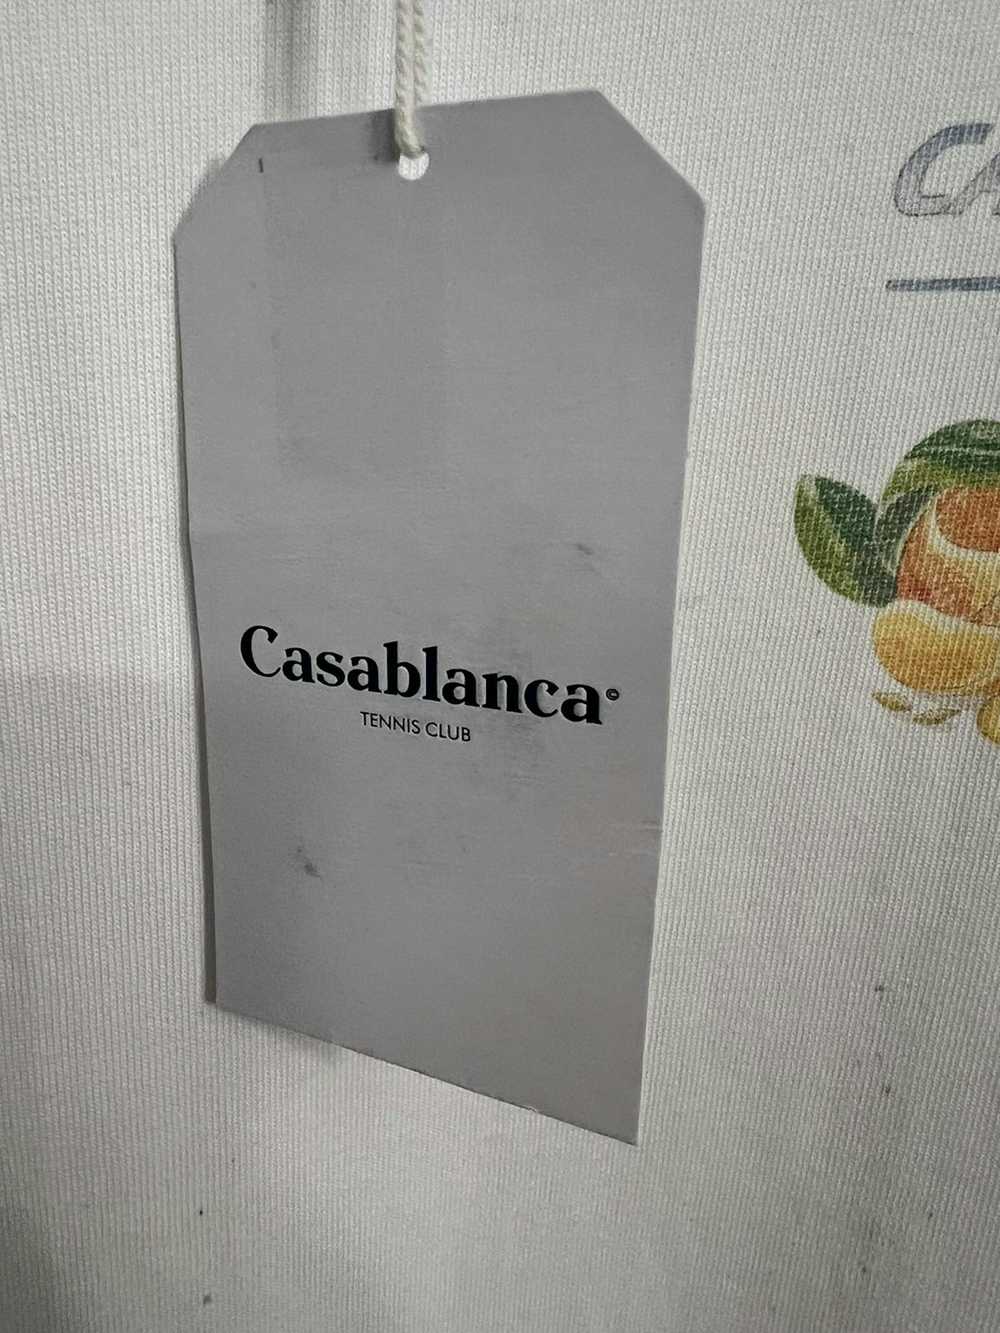 Casablanca Casablanca Airlines T shirt size medium - image 5